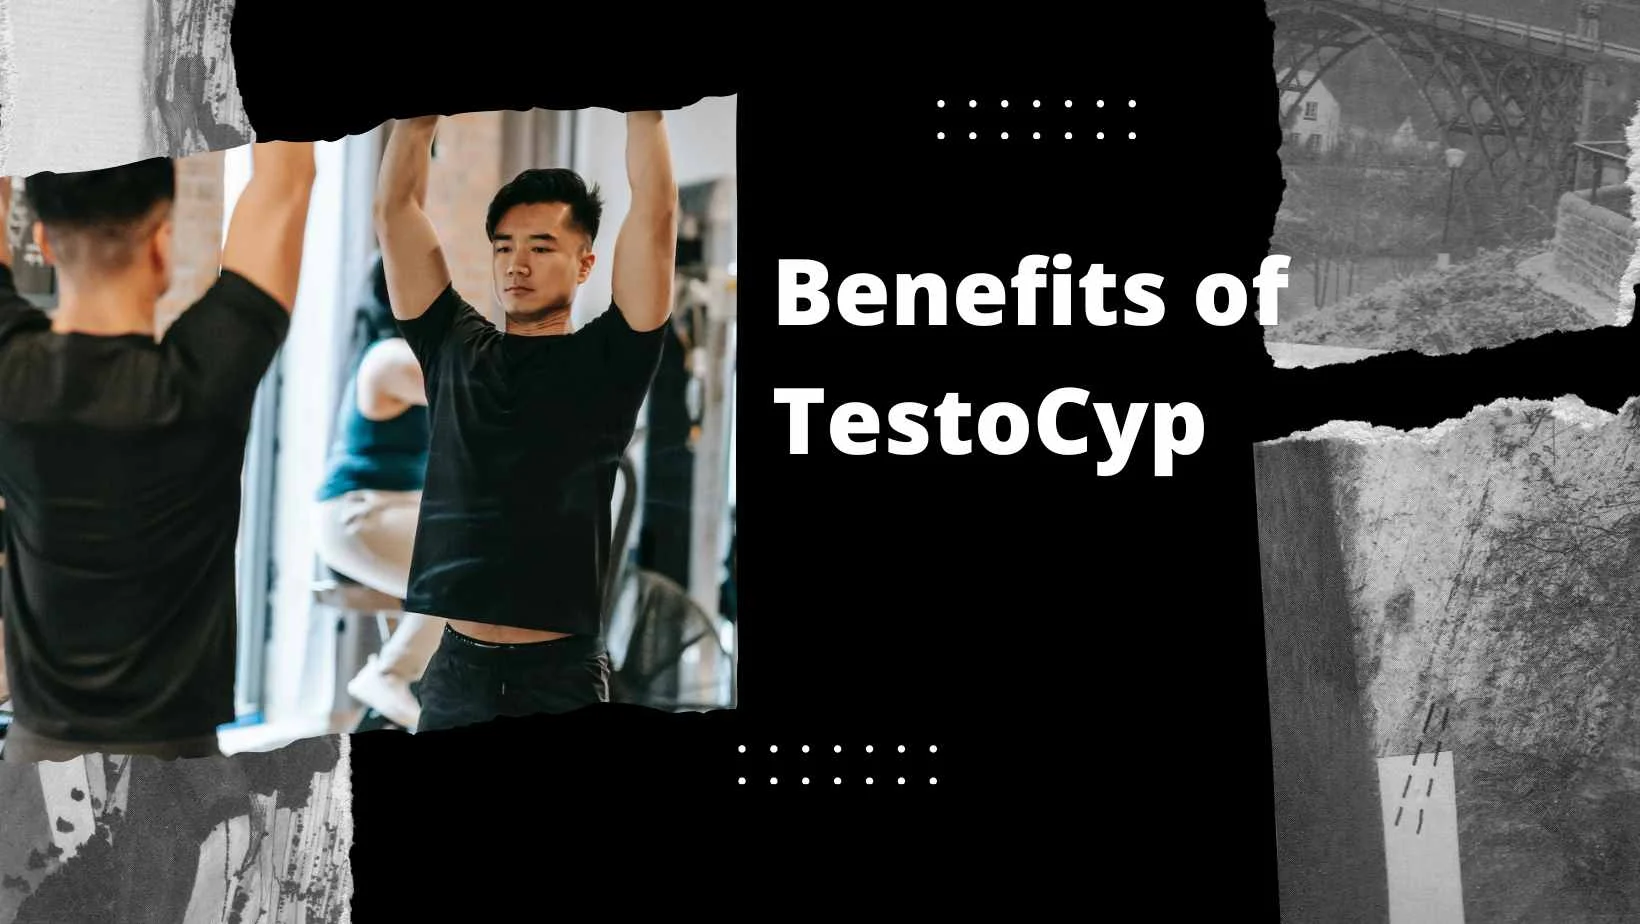 Benefits of TestoCyp